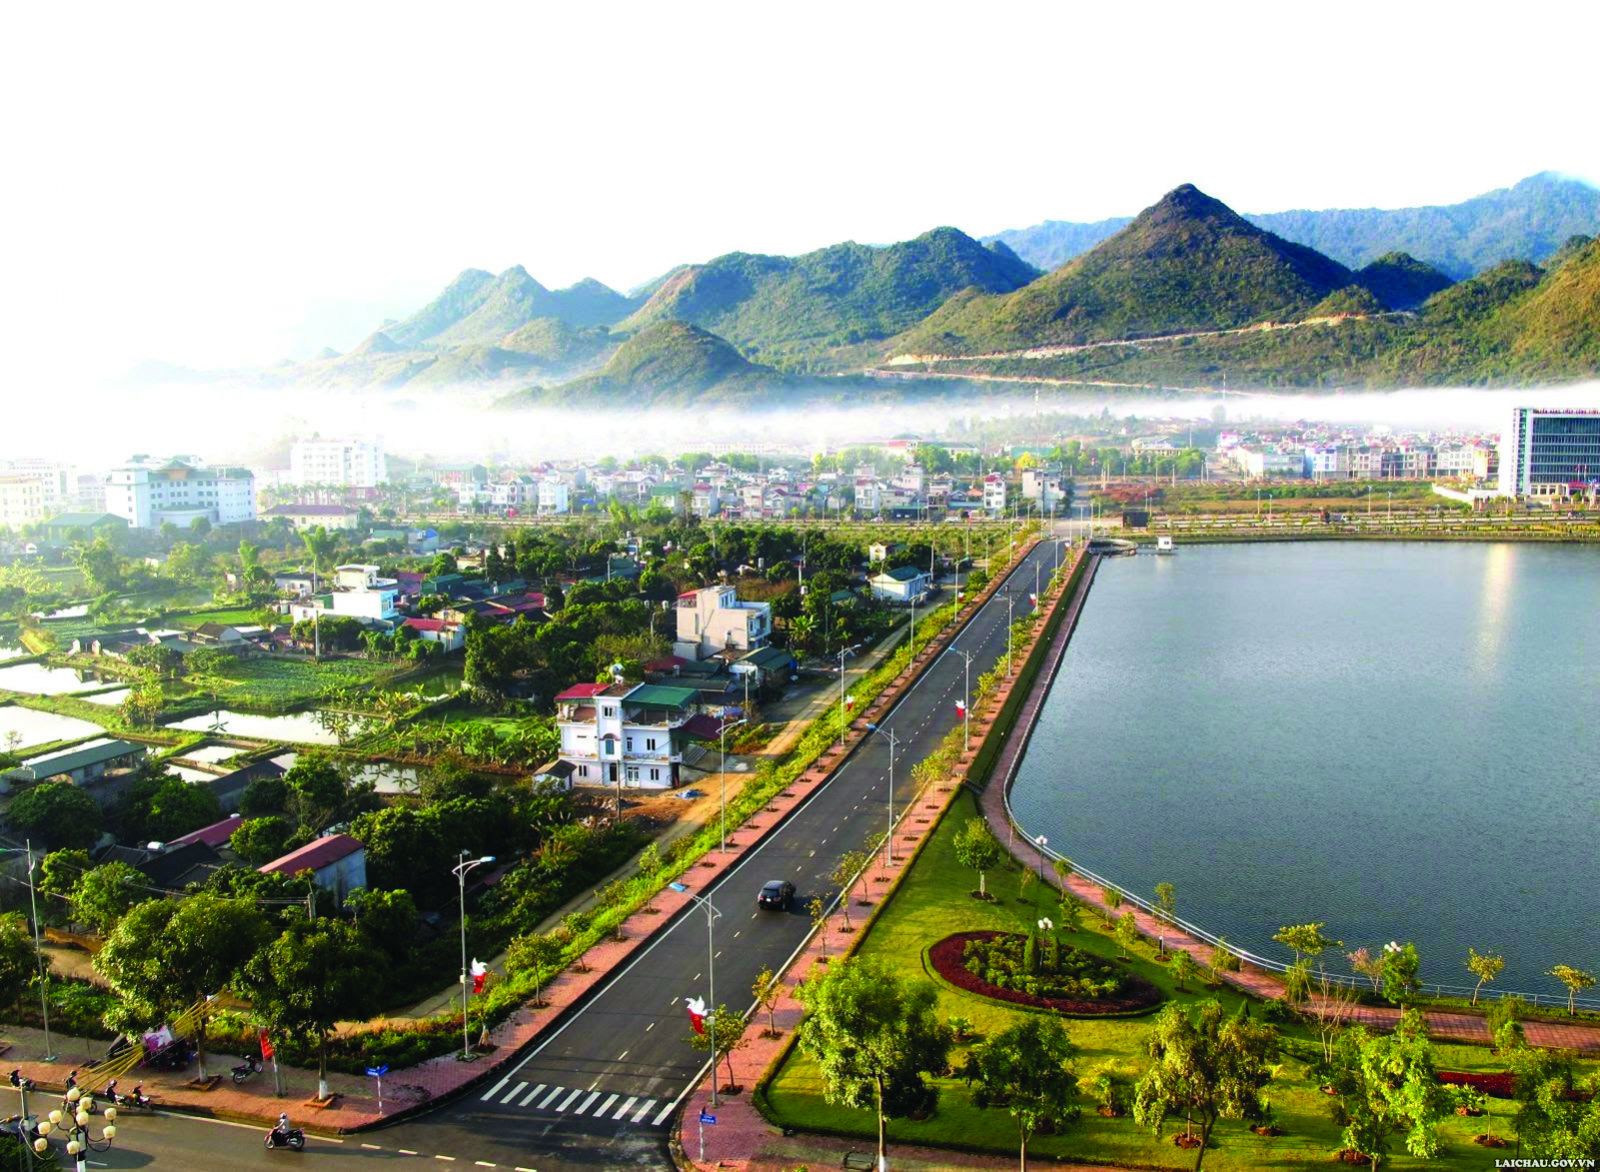  Thành phố Lai Châu được đầu tư hạ tầng khá đồng bộ phục vụ phát triển kinh tế - xã hội